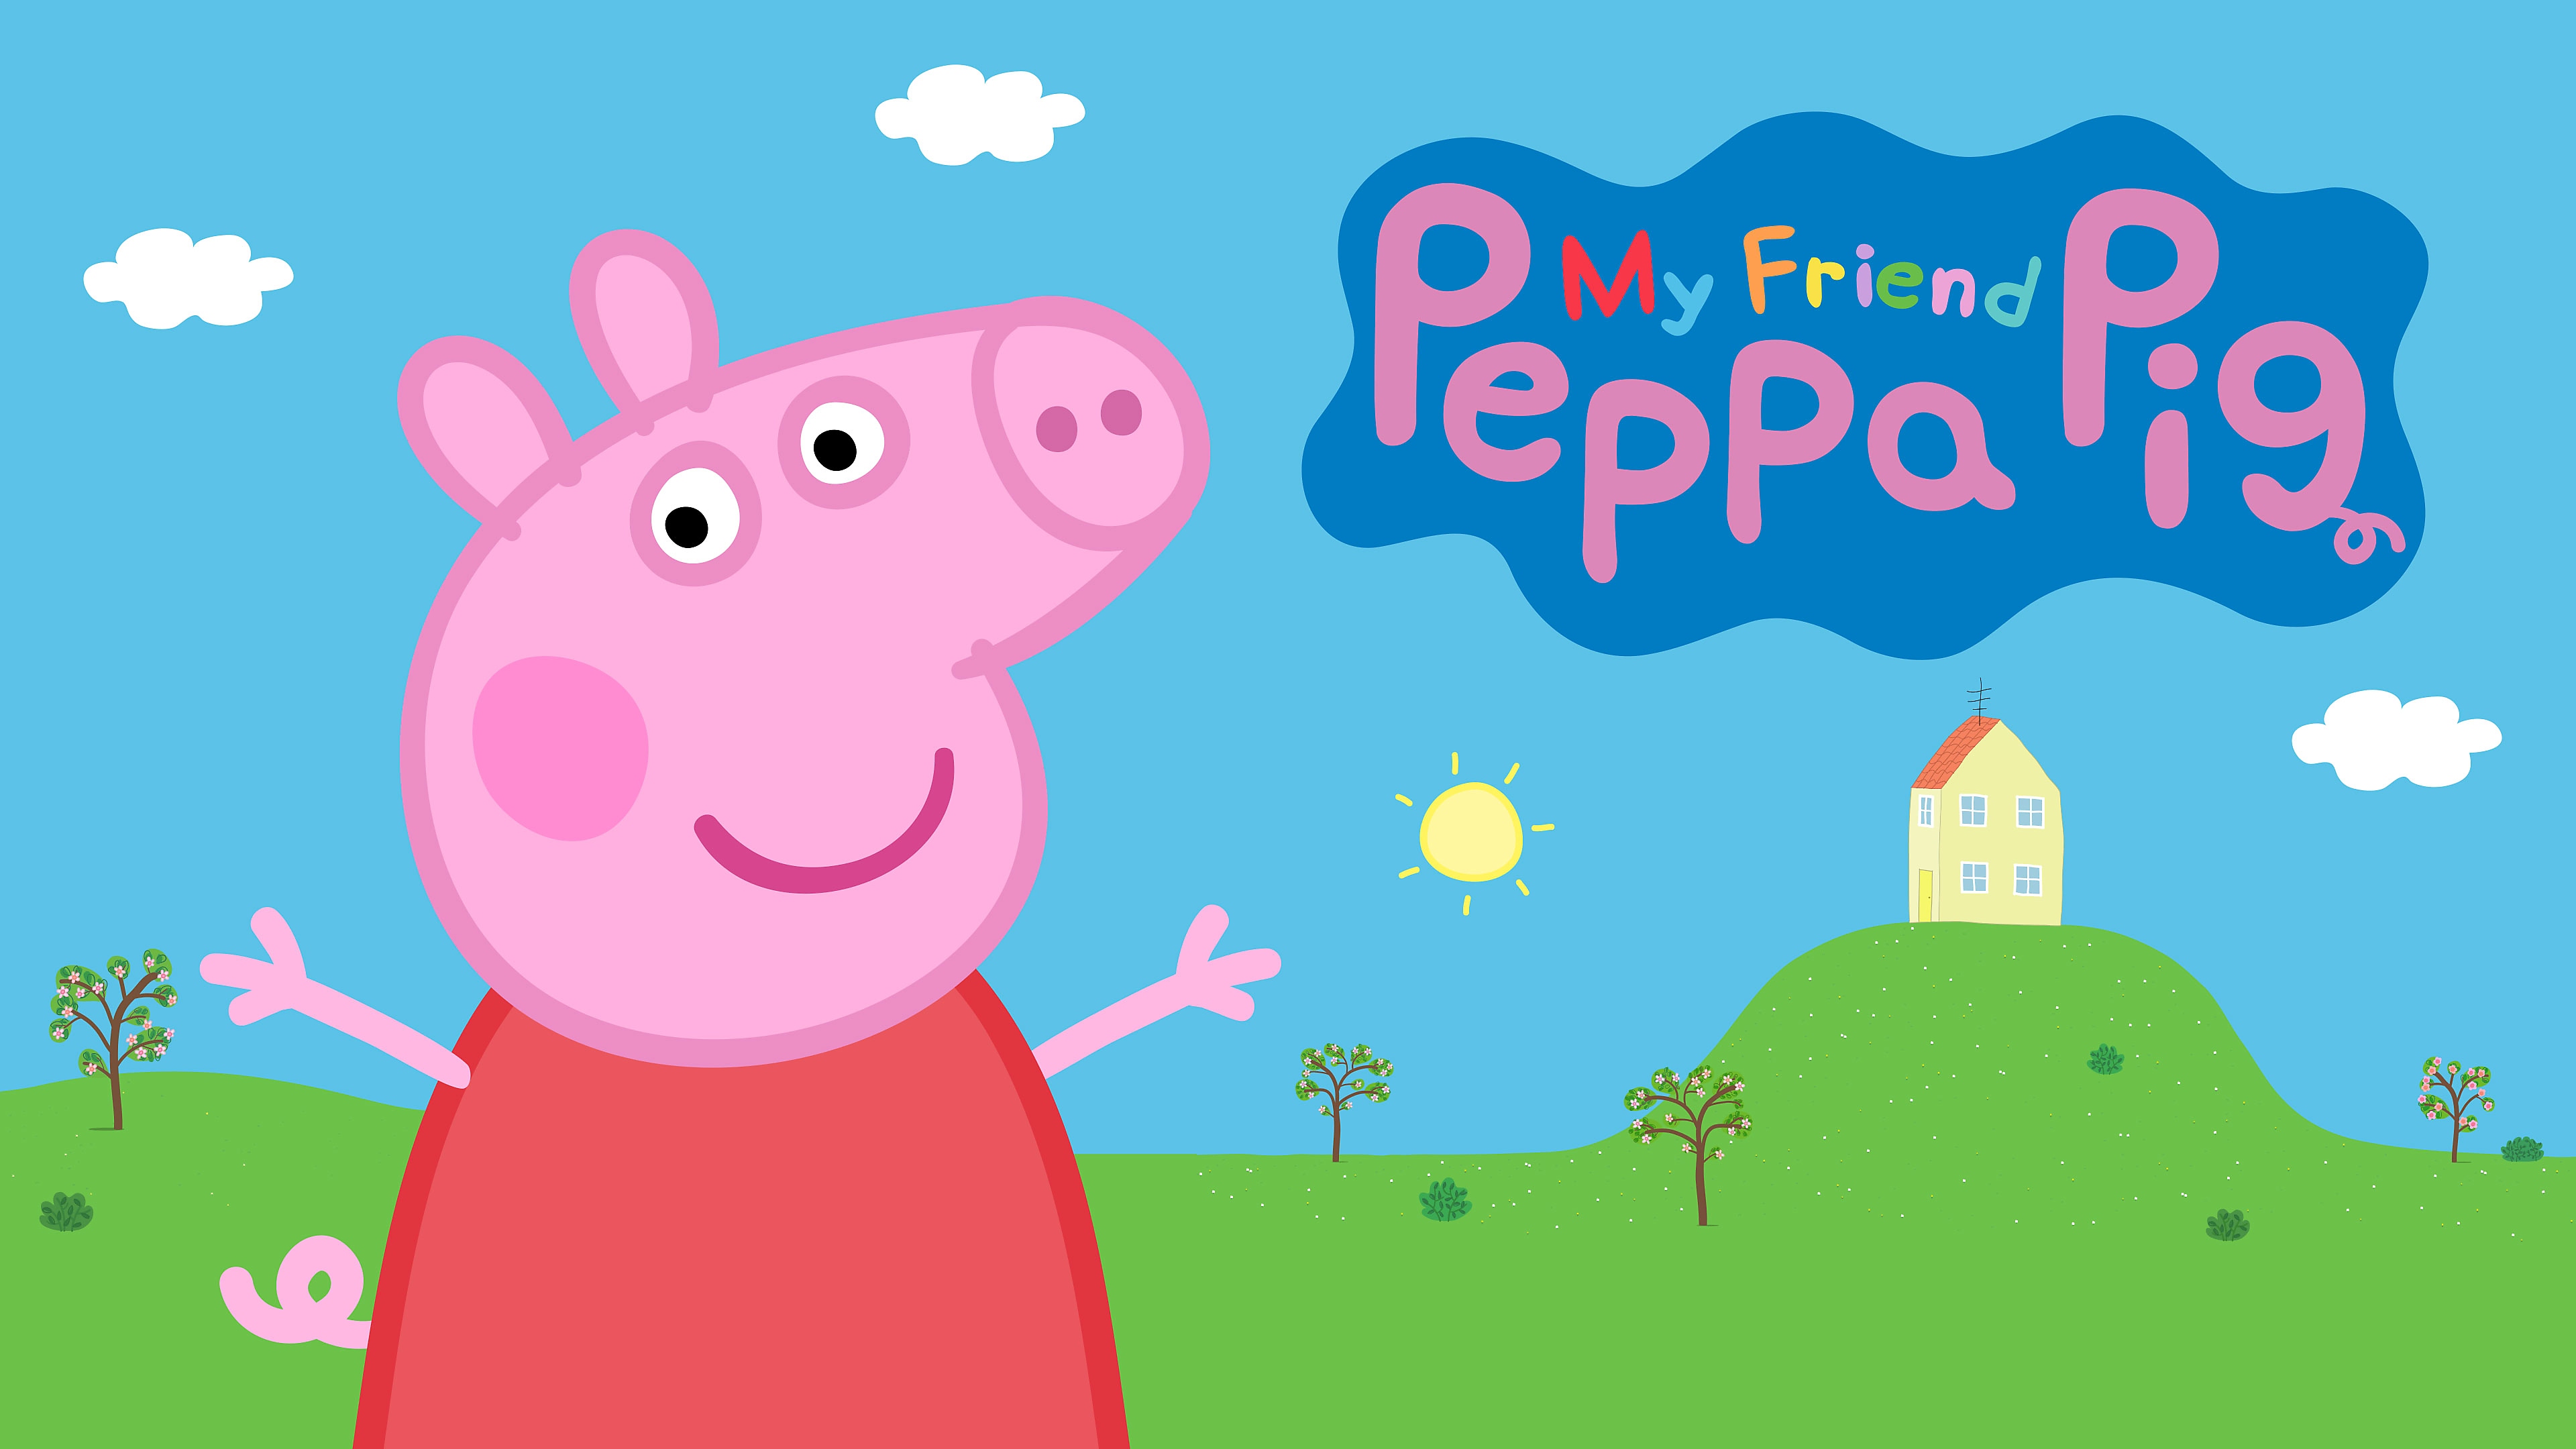 Peppa os saluda desde su casa en Mi Amiga, Peppa Pig para PS4 y PS5